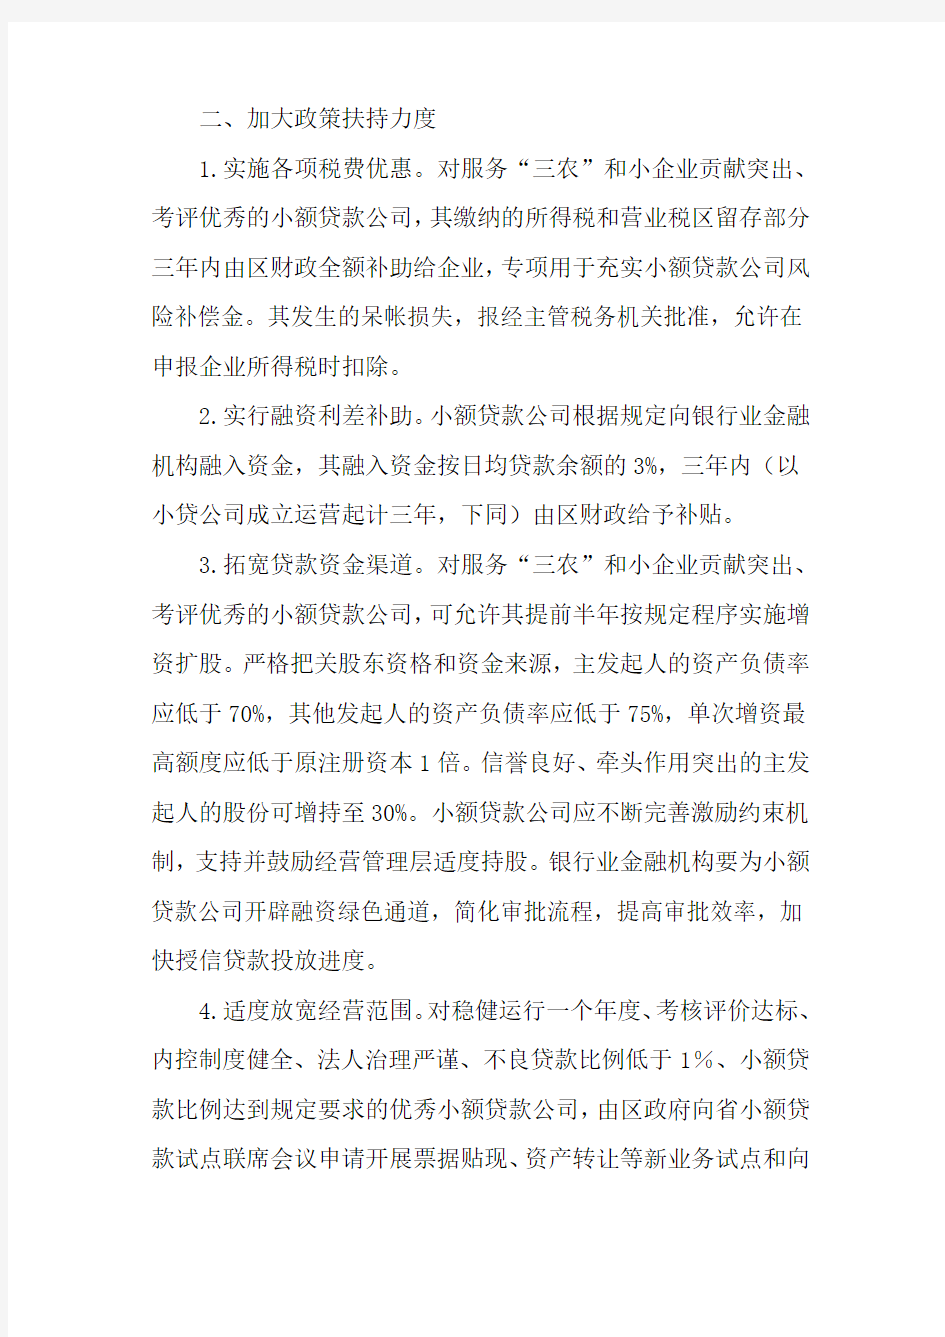 杭州市萧山区人民政府办公室关于促进萧山区小额贷款公司发展的实施意见